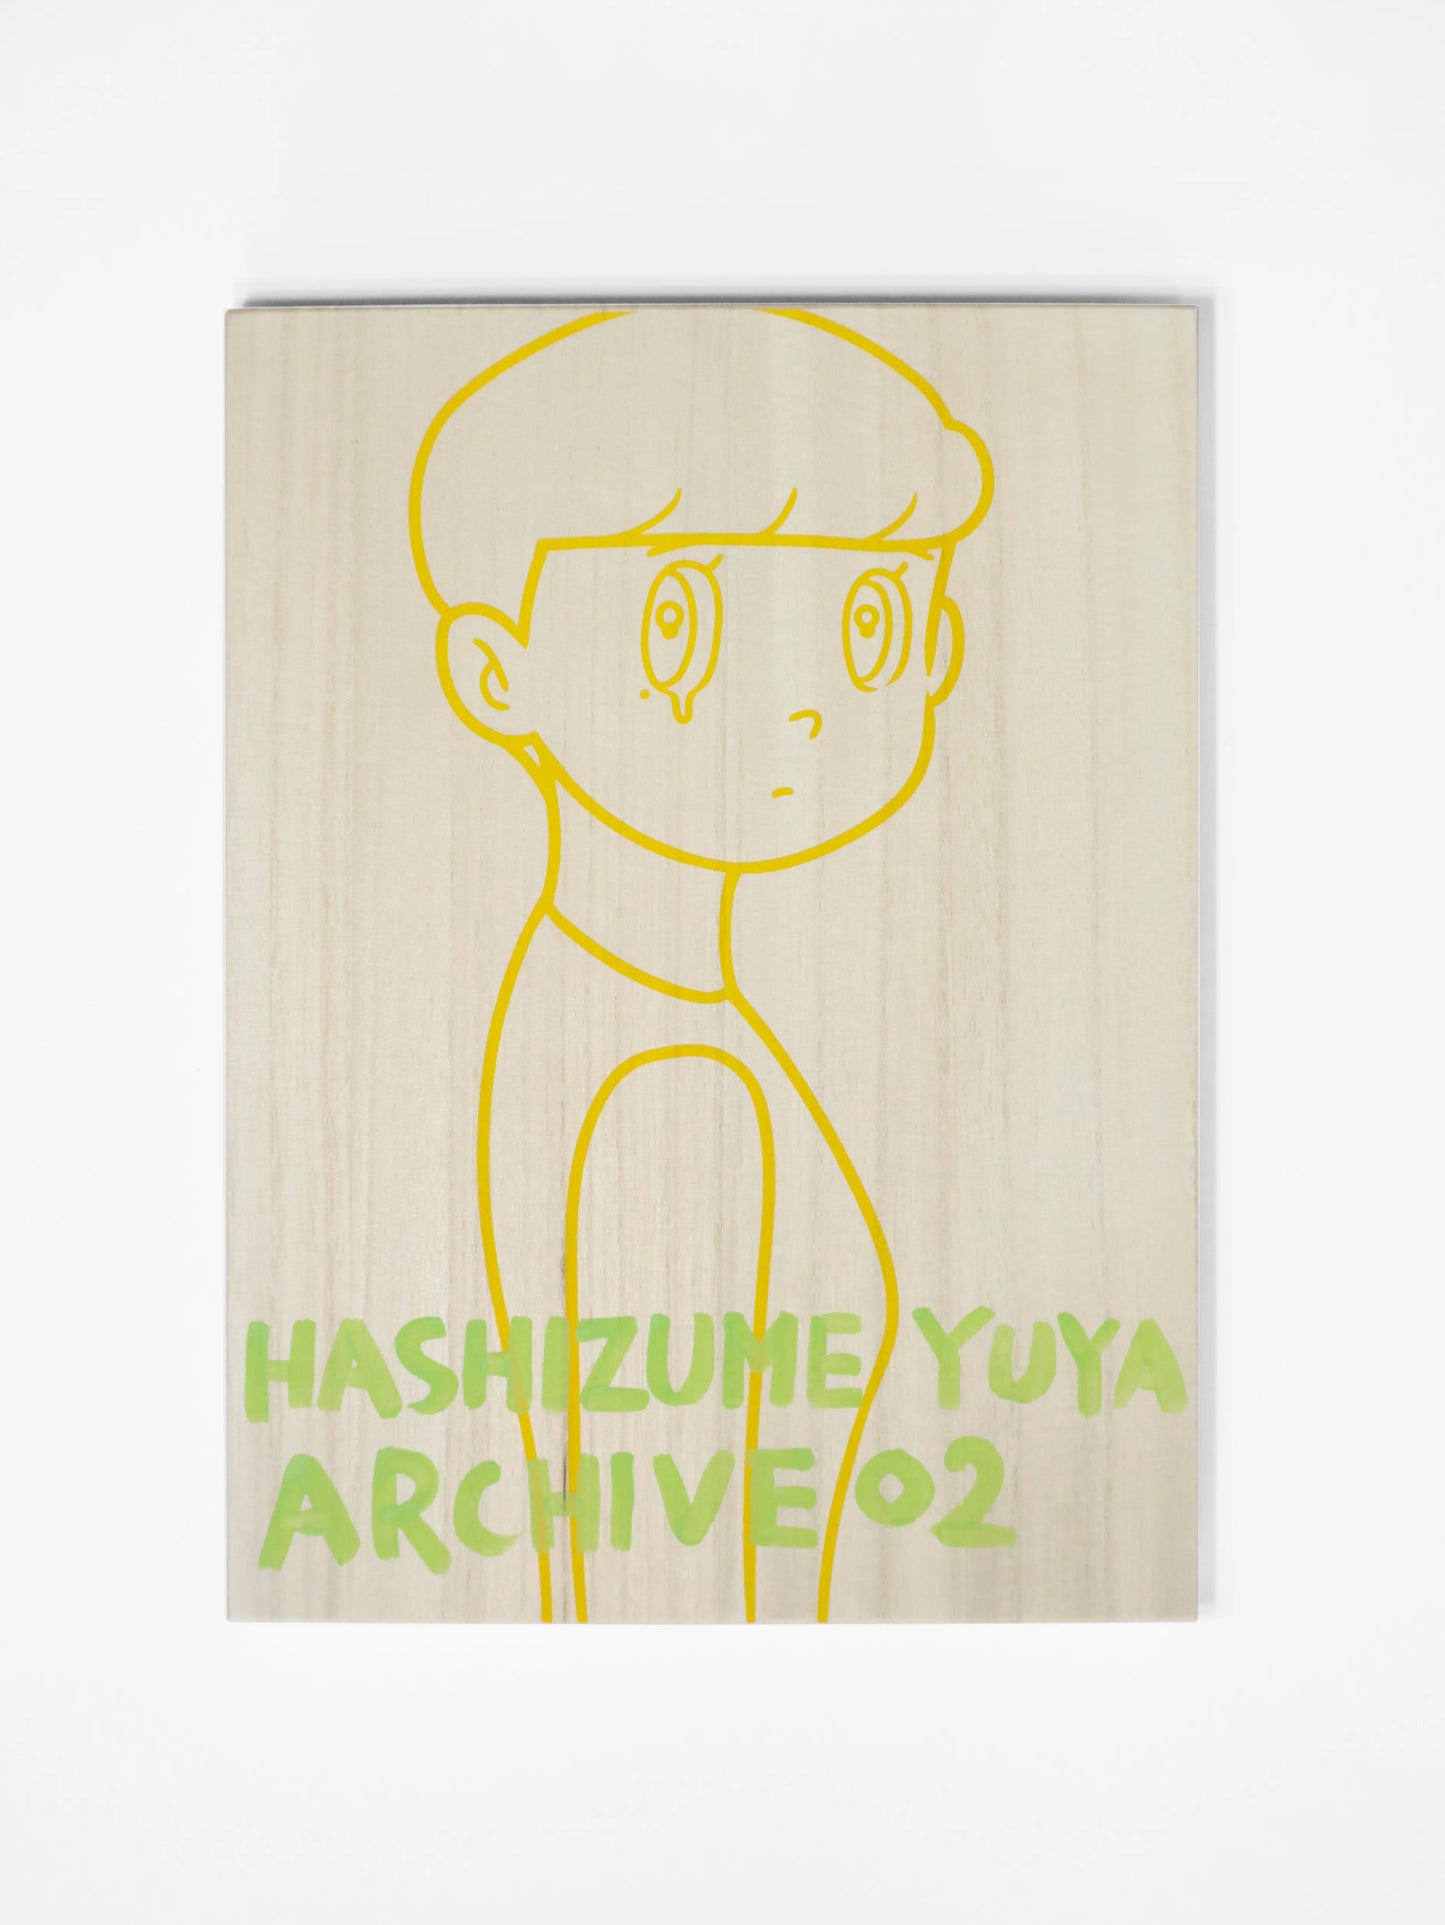 YUYA HASHIZUME ARCHIVE BOX 02_20